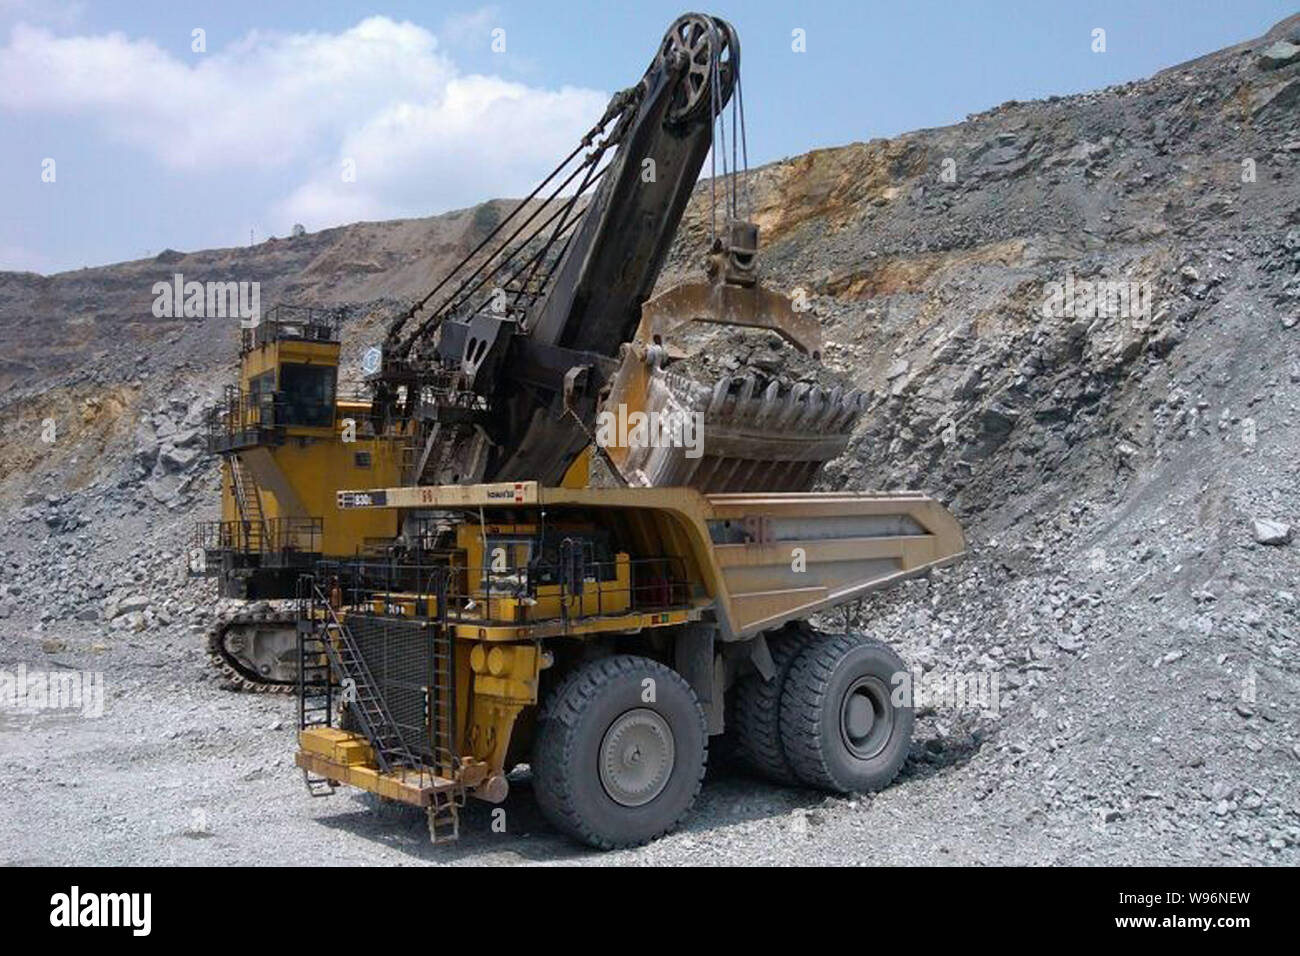 --Archivo-vehículos de ingeniería son visto explotar una mina de cobre en la ciudad Dexing, sudeste de la provincia de Jiangxi, chinas, el 28 de julio de 2012. Las importaciones de unwrou Foto de stock